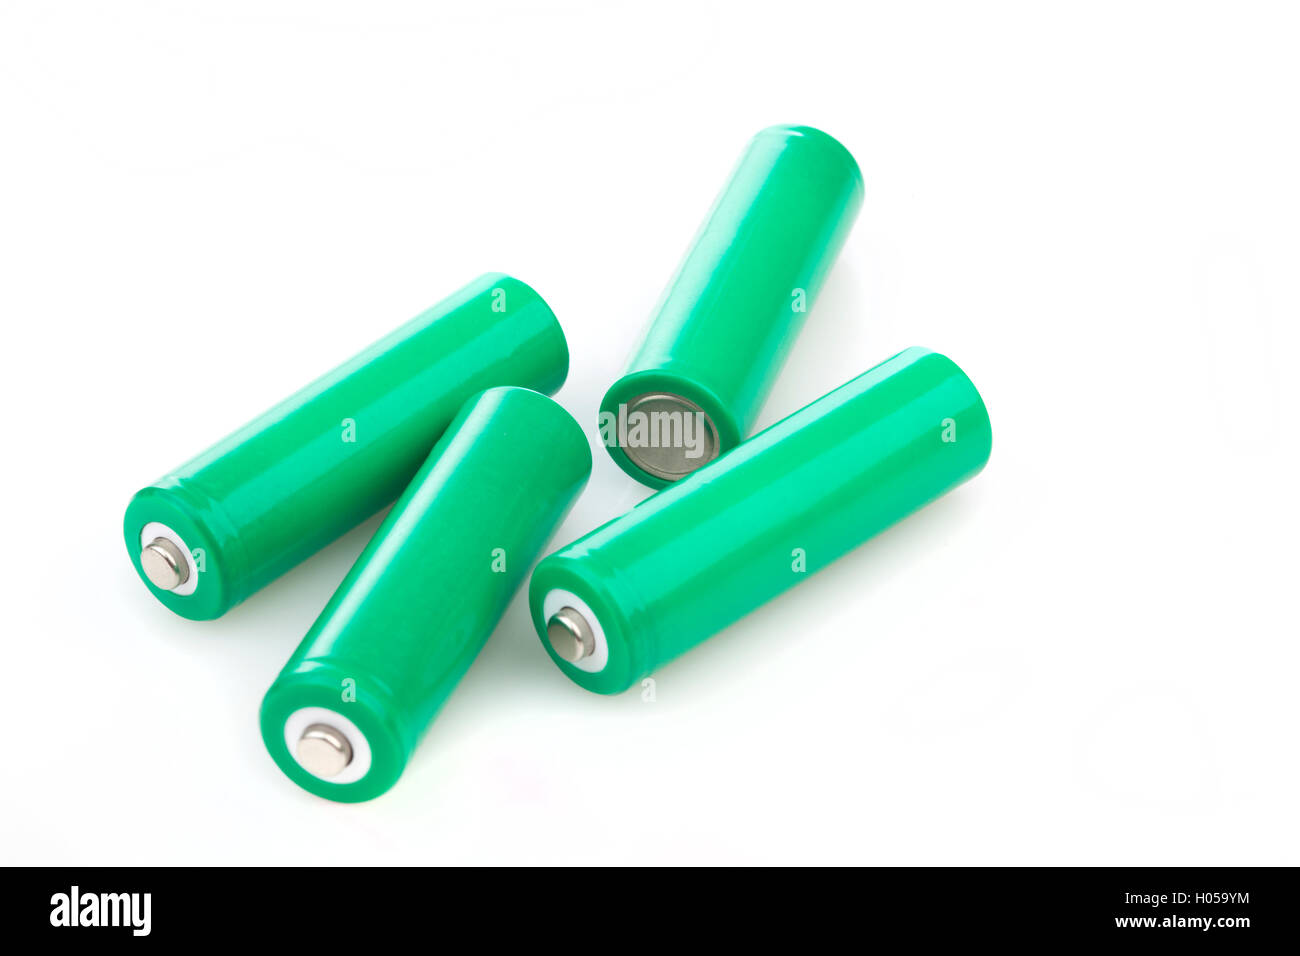 4 wiederaufladbare grünen Eco-Batterien Stockfoto